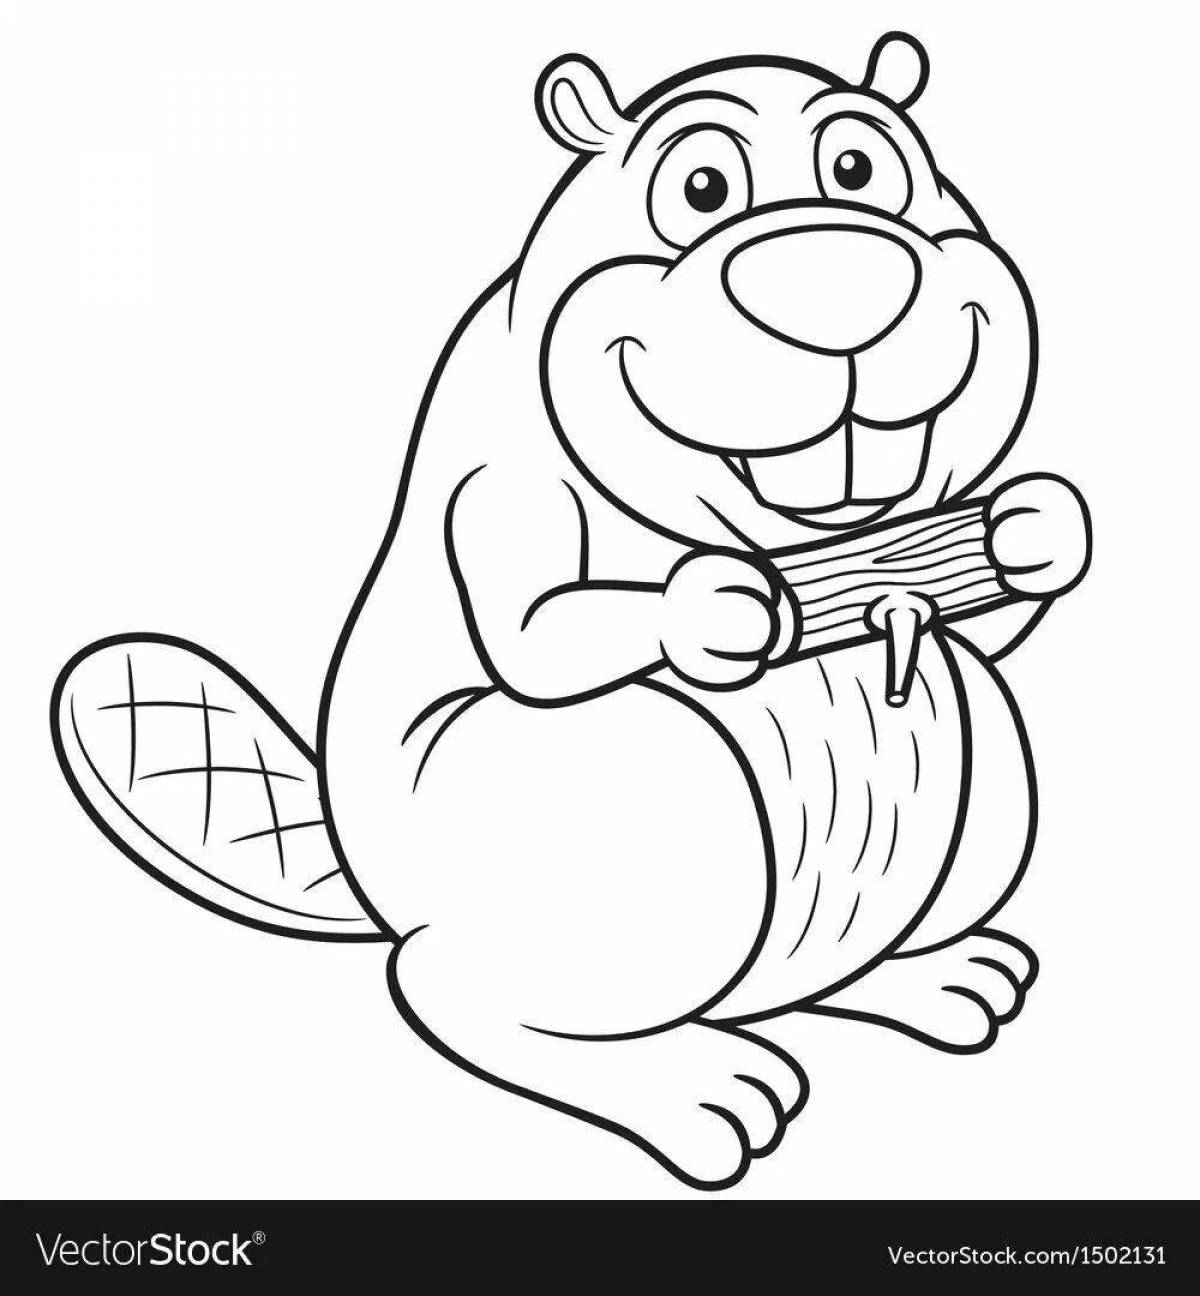 Fun coloring beaver for kids